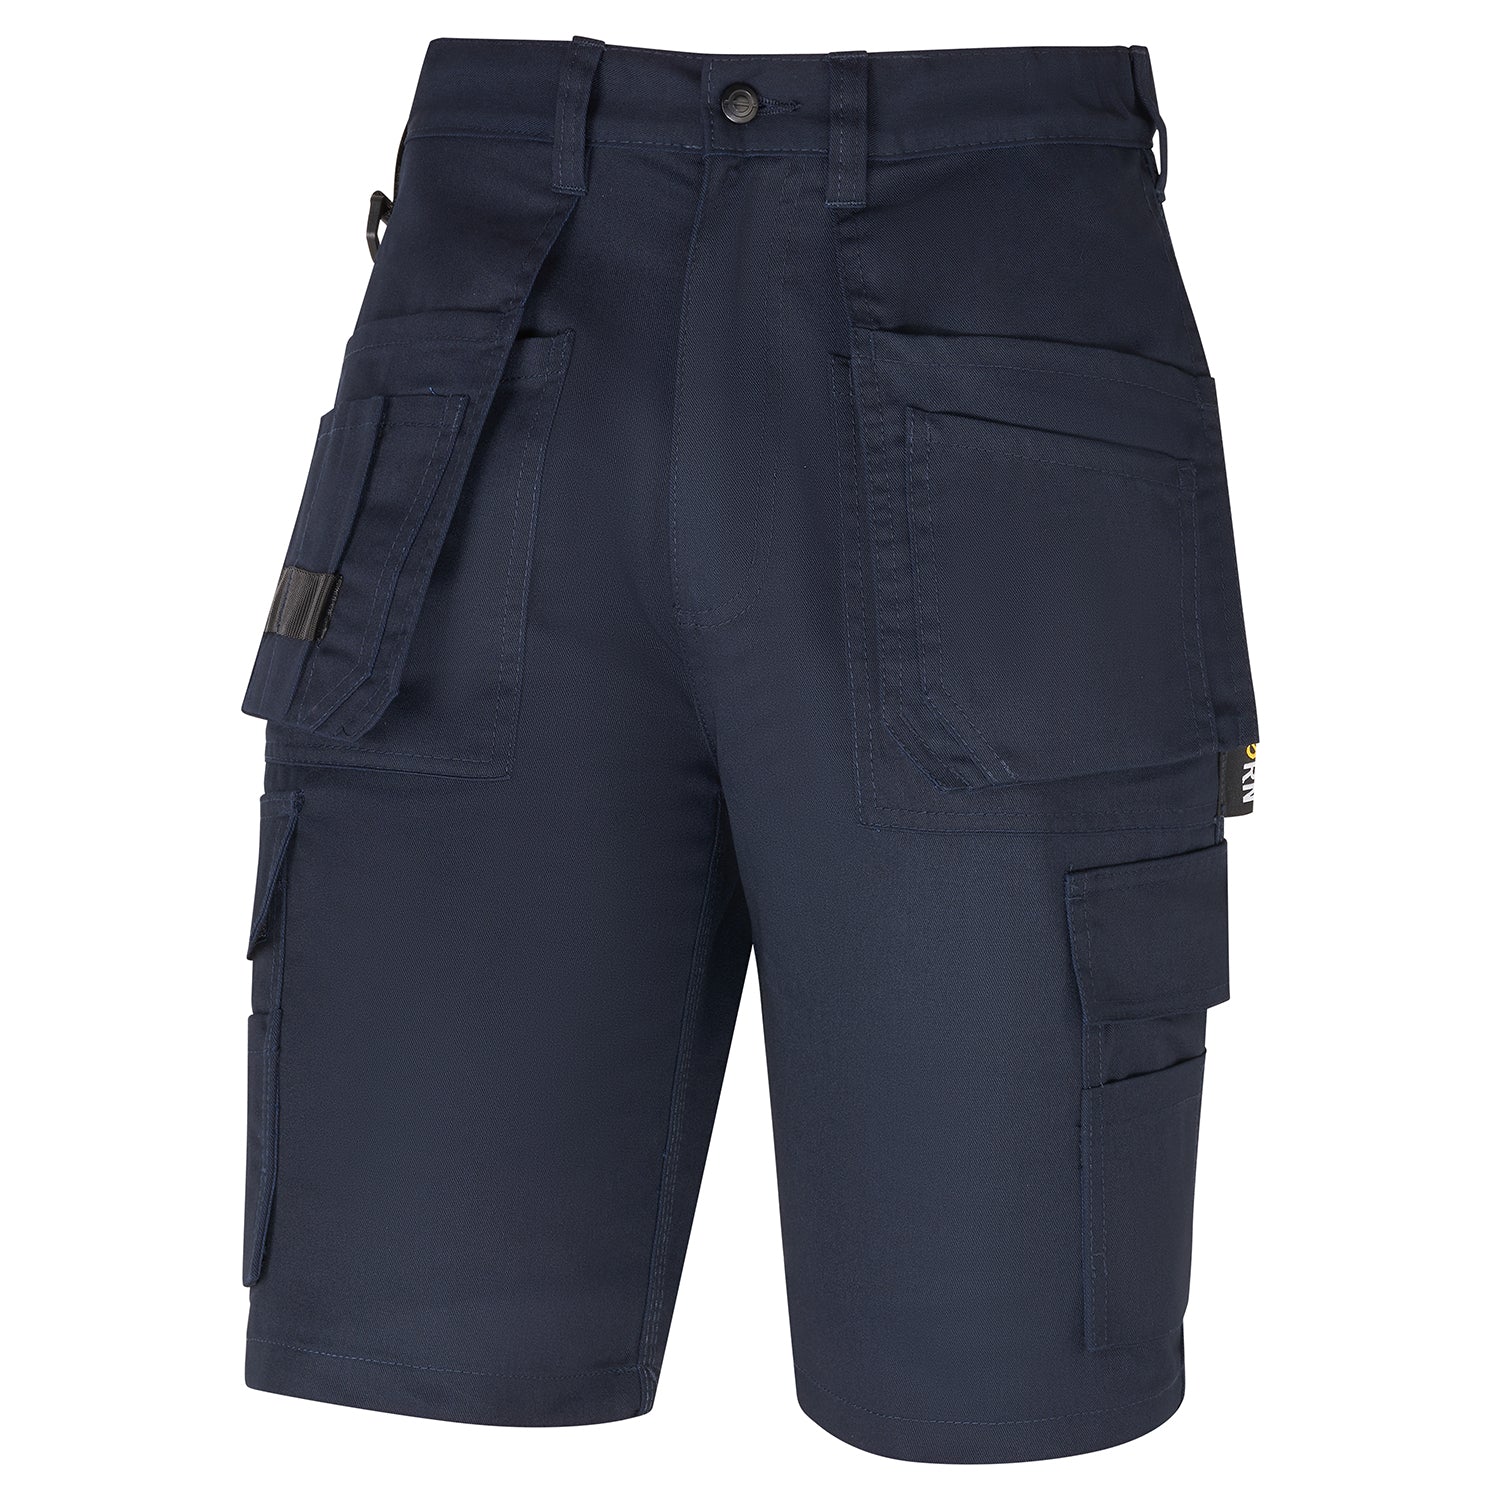 ORN Merlin Tradesman Shorts - Navy